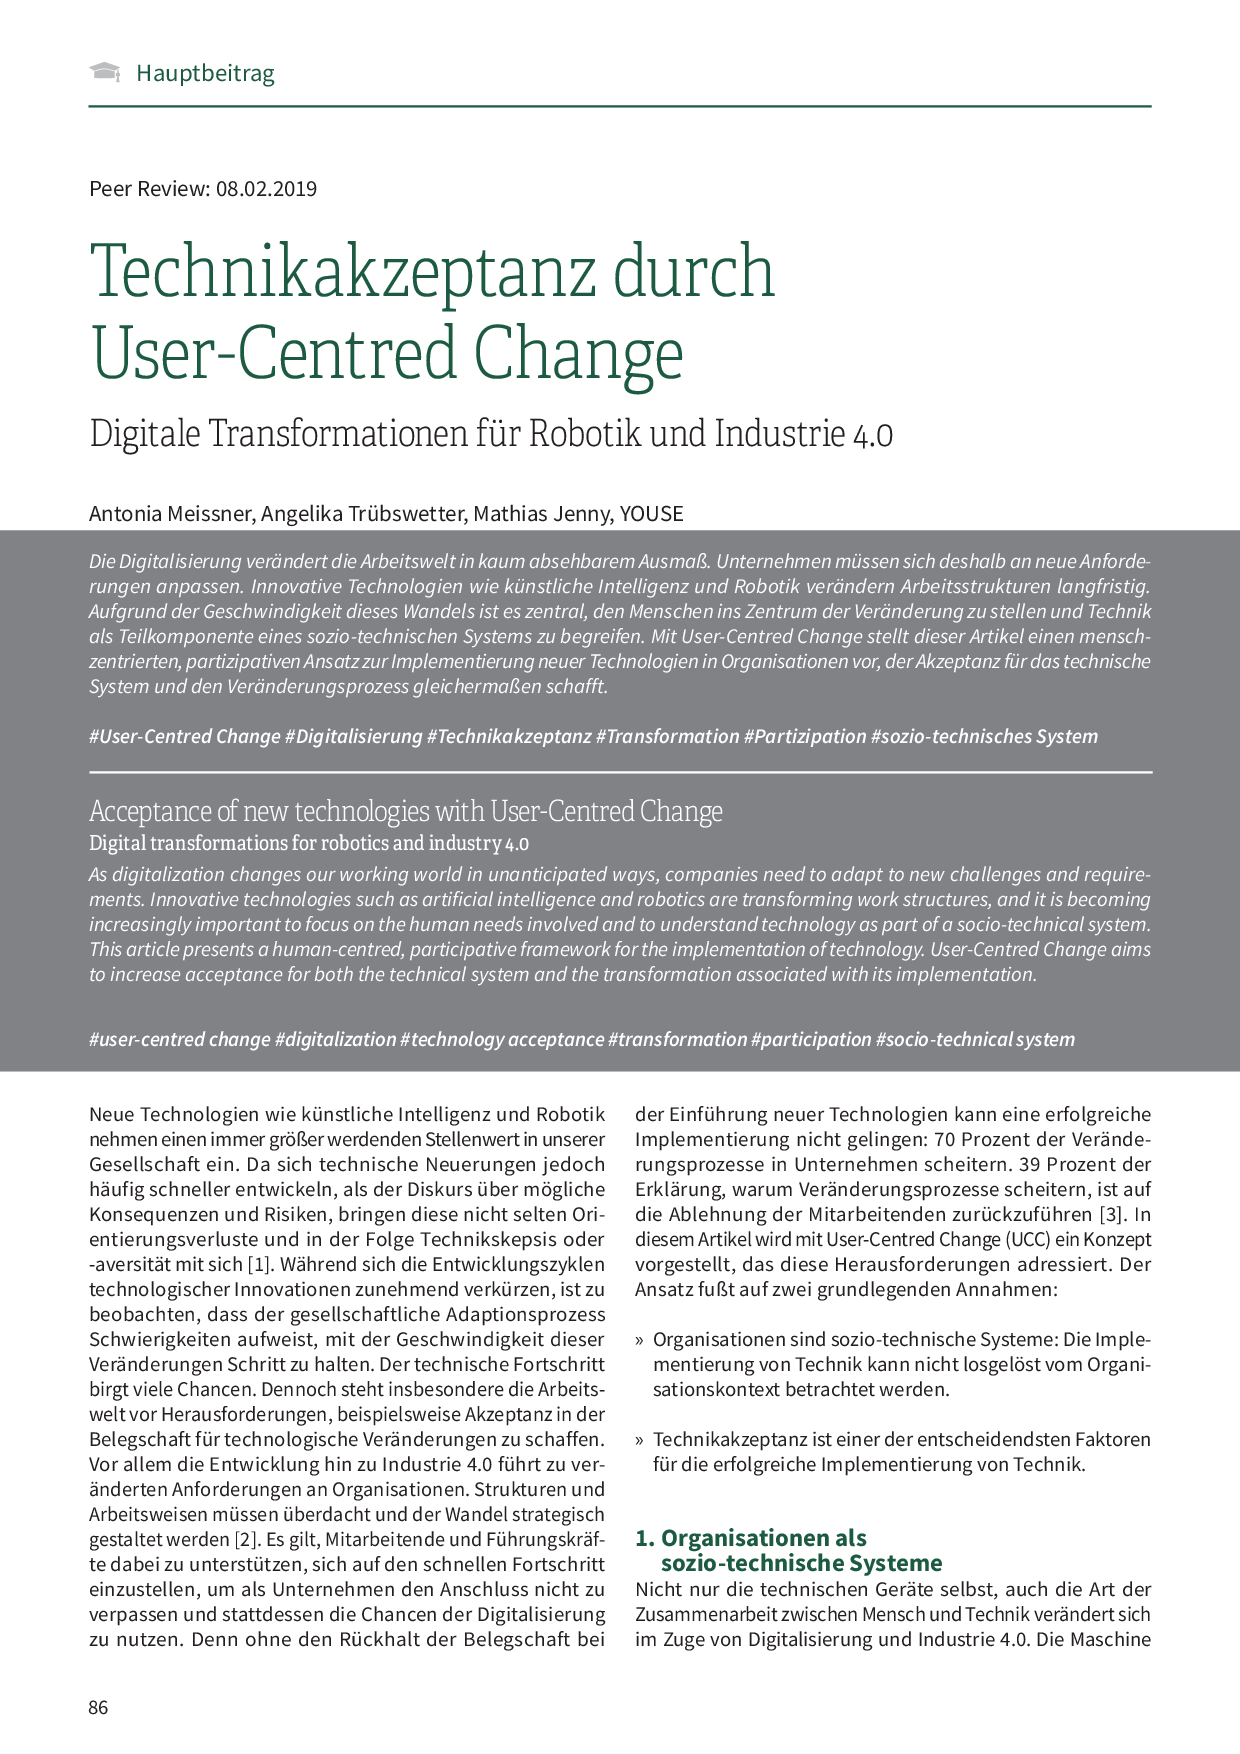 Technikakzeptanz durch User-Centred Change